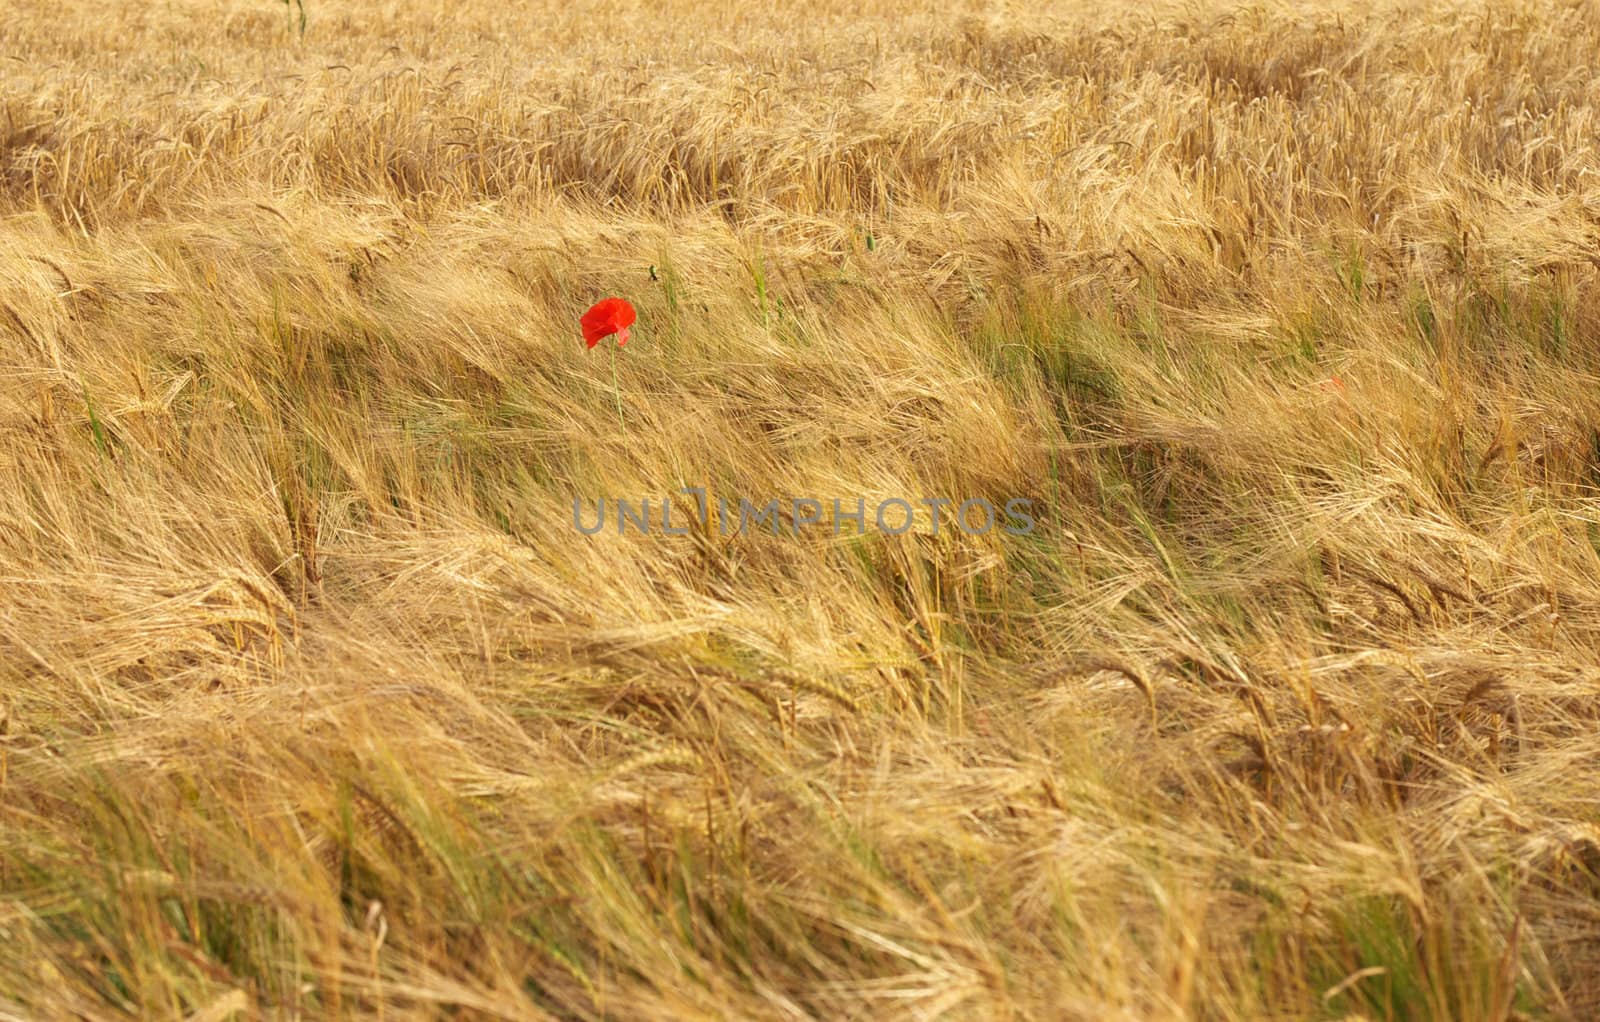 Ripe wheat field 4 by hospitalera